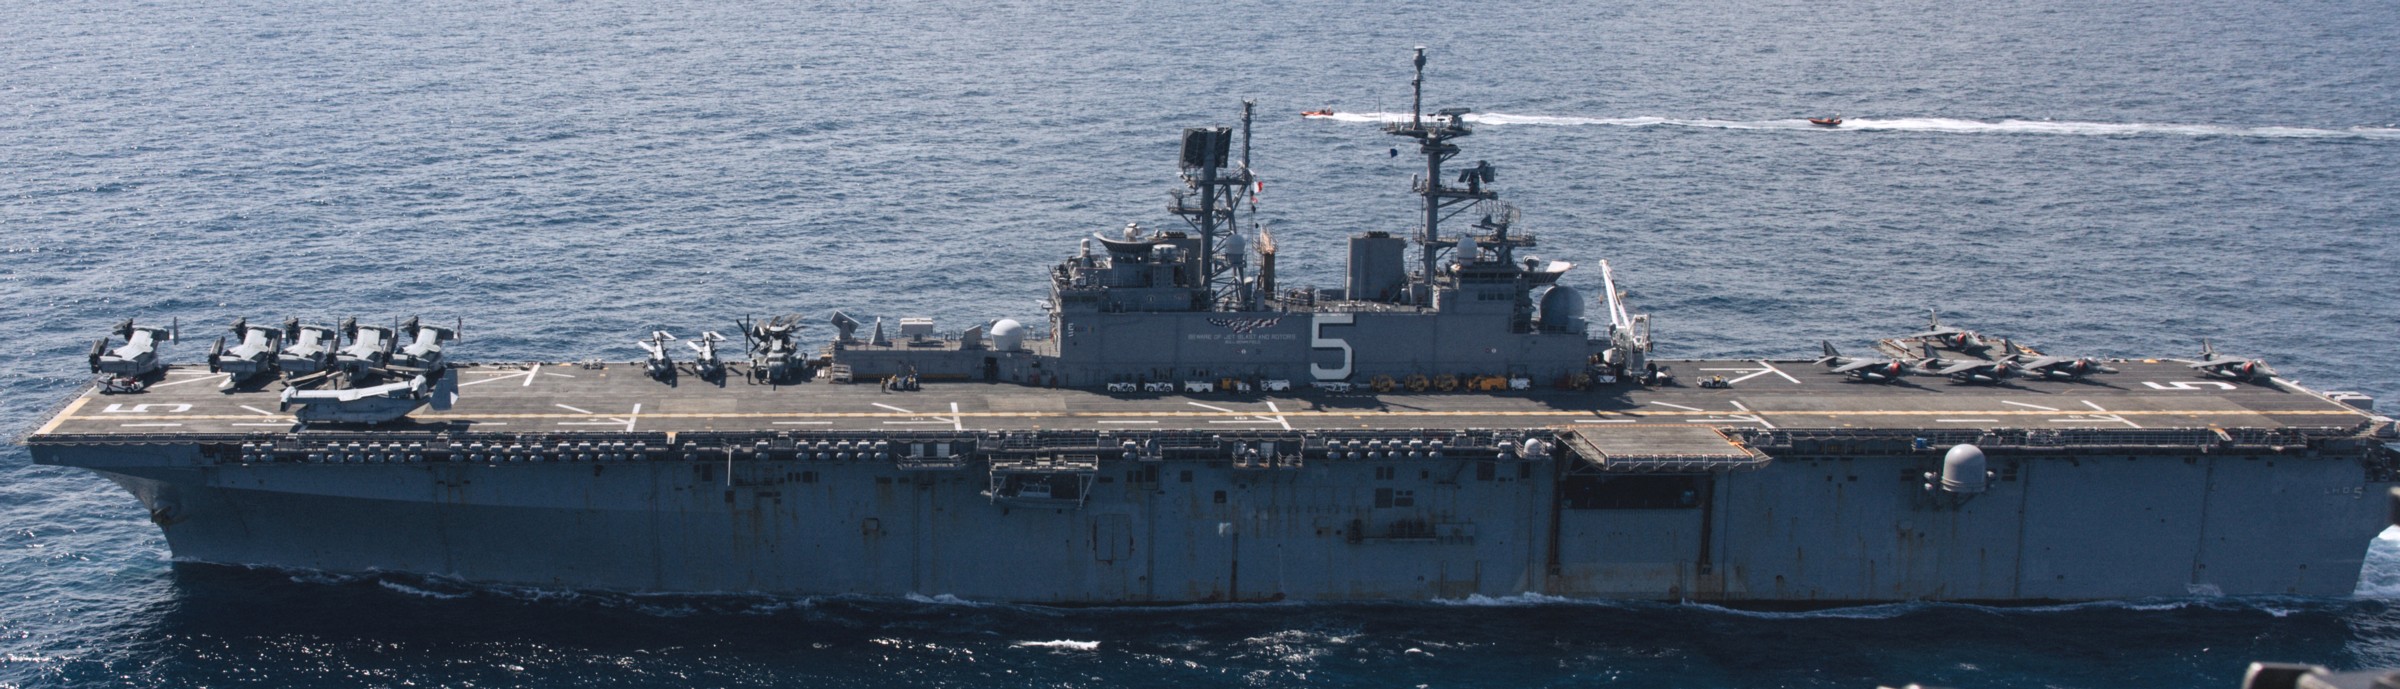 lhd-5 uss bataan wasp class amphibious assault ship dock landing helicopter us navy vmm-162 marines arg meuex 186